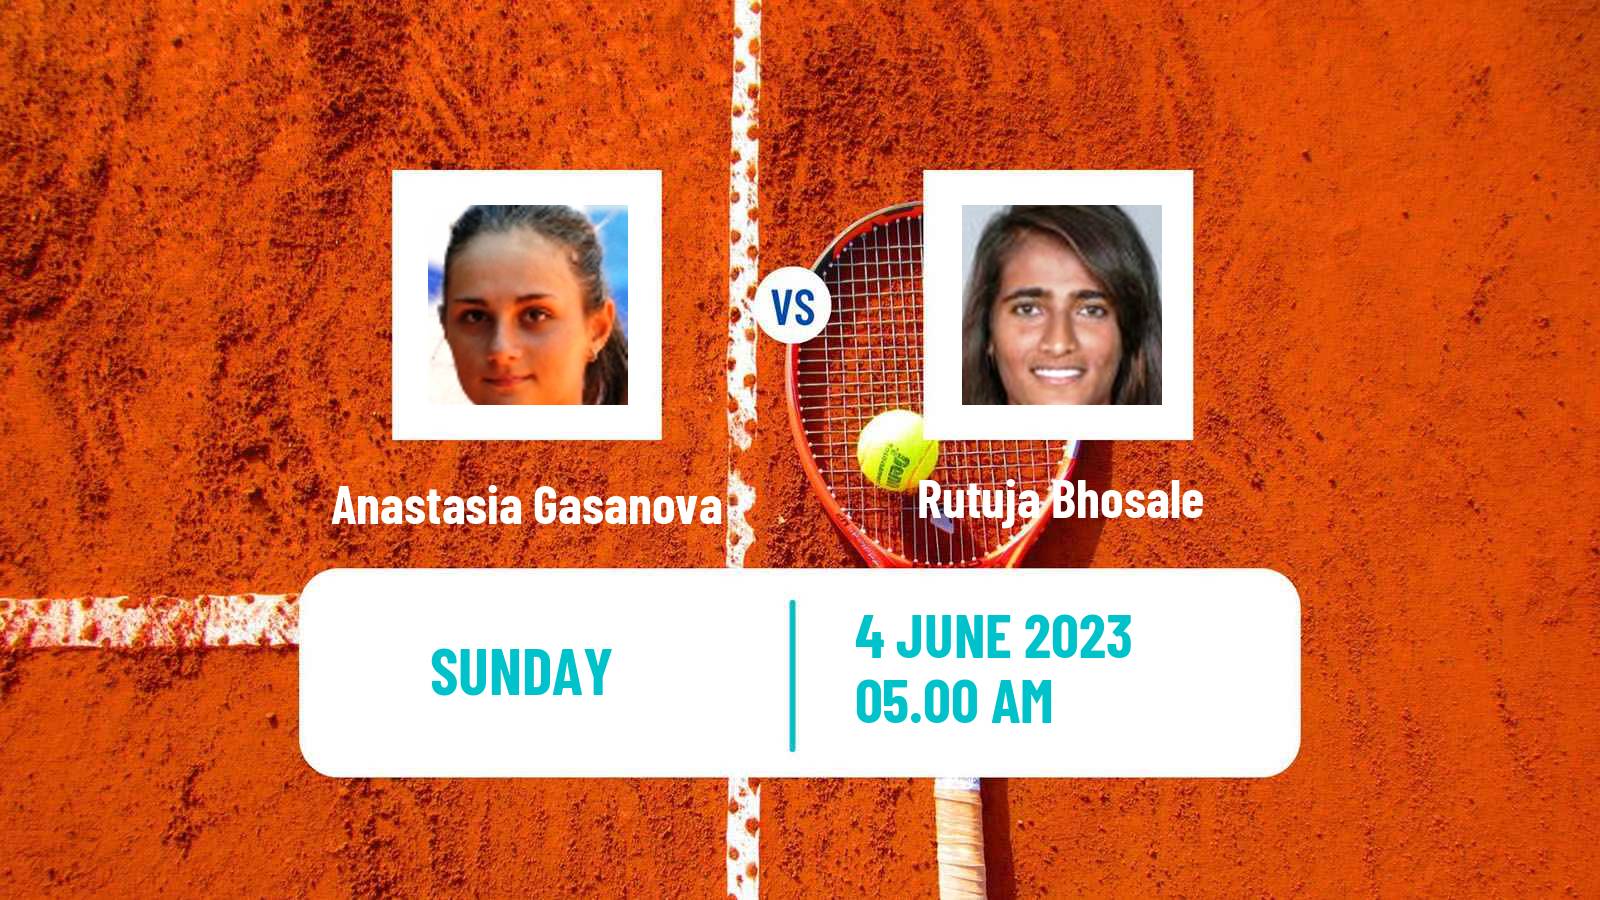 Tennis ITF W25 La Marsa Women Anastasia Gasanova - Rutuja Bhosale